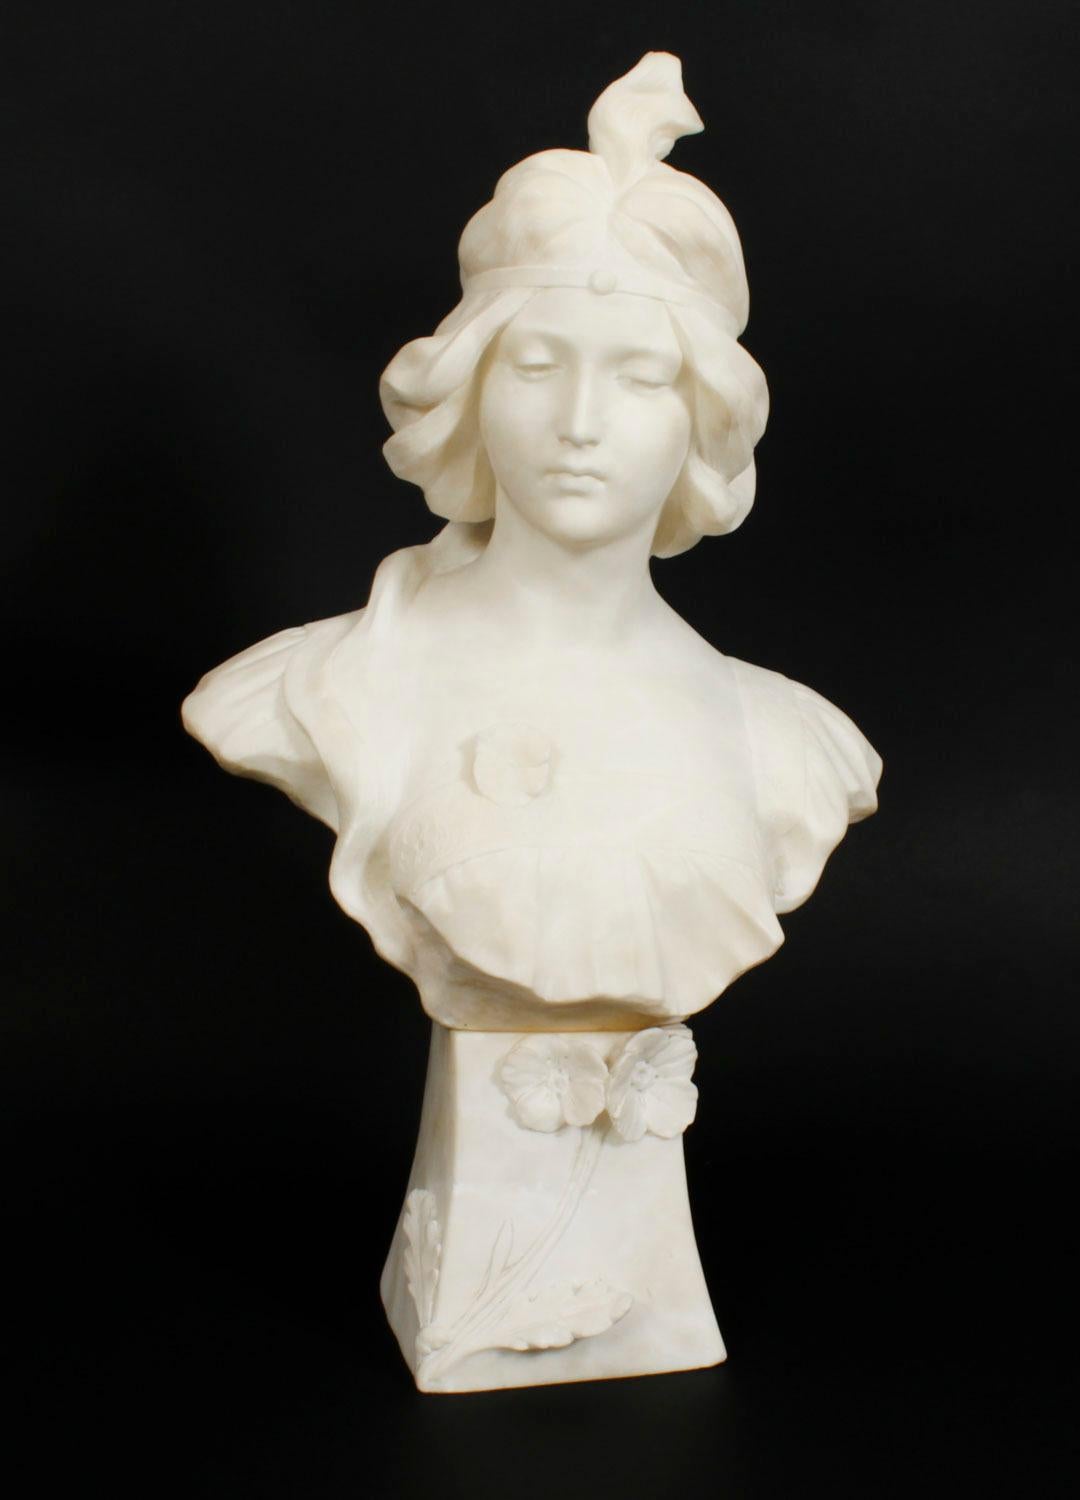 Dies ist schön antiken Französisch Jugendstil Alabaster schulterlang Büste eines schönen Mädchens,  Um 1890.

Die  Das stilisierte Jugendstilgesicht und der Körper sind sensibel in Alabaster auf einem floral geformten Sockel modelliert.

Sein